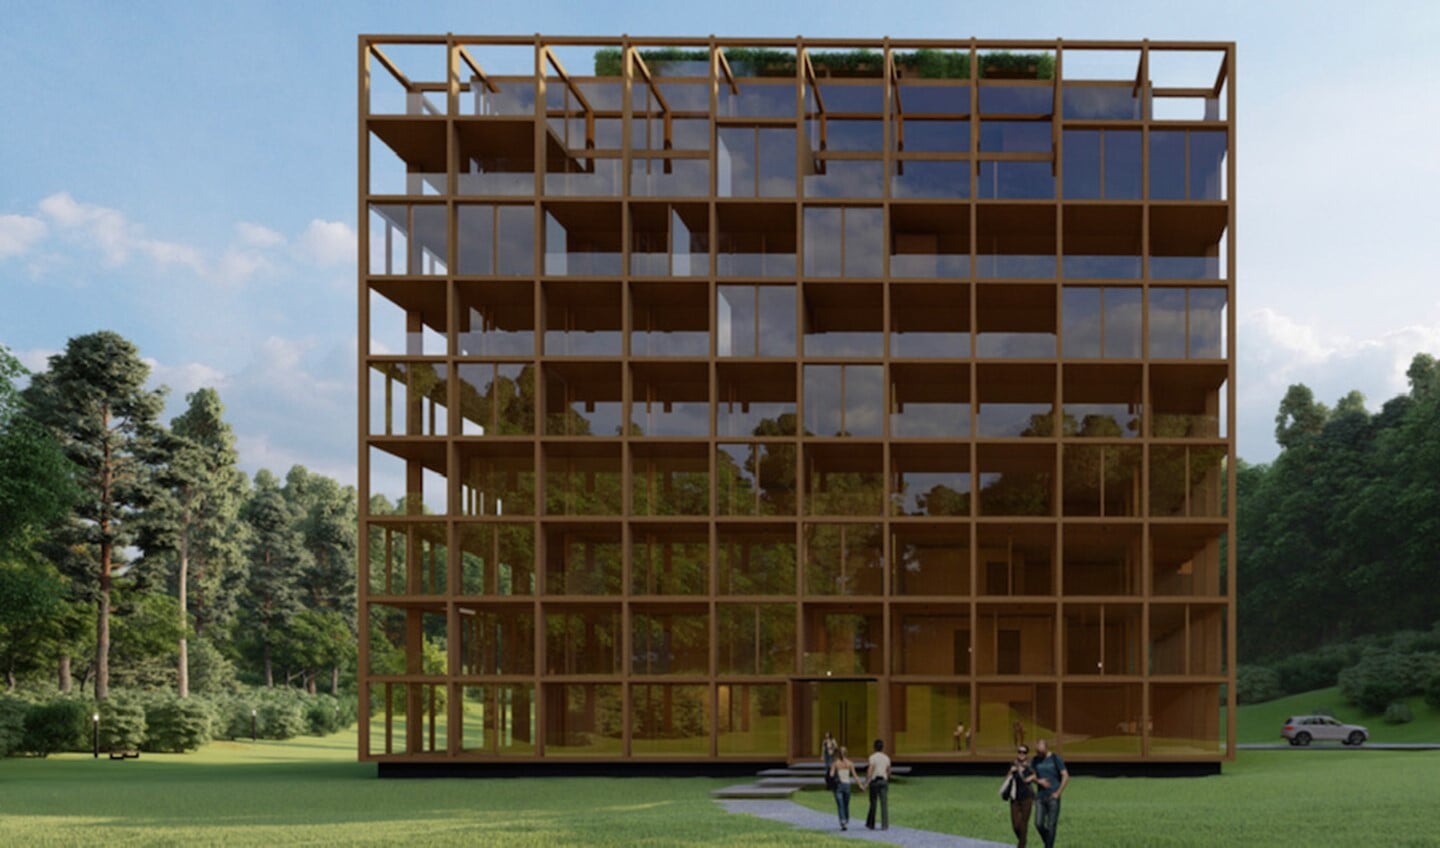 Minimalistische architectuur in hout, waarbij de omgeving wordt weerspiegeld in de teruggetrokken glazen gevel.